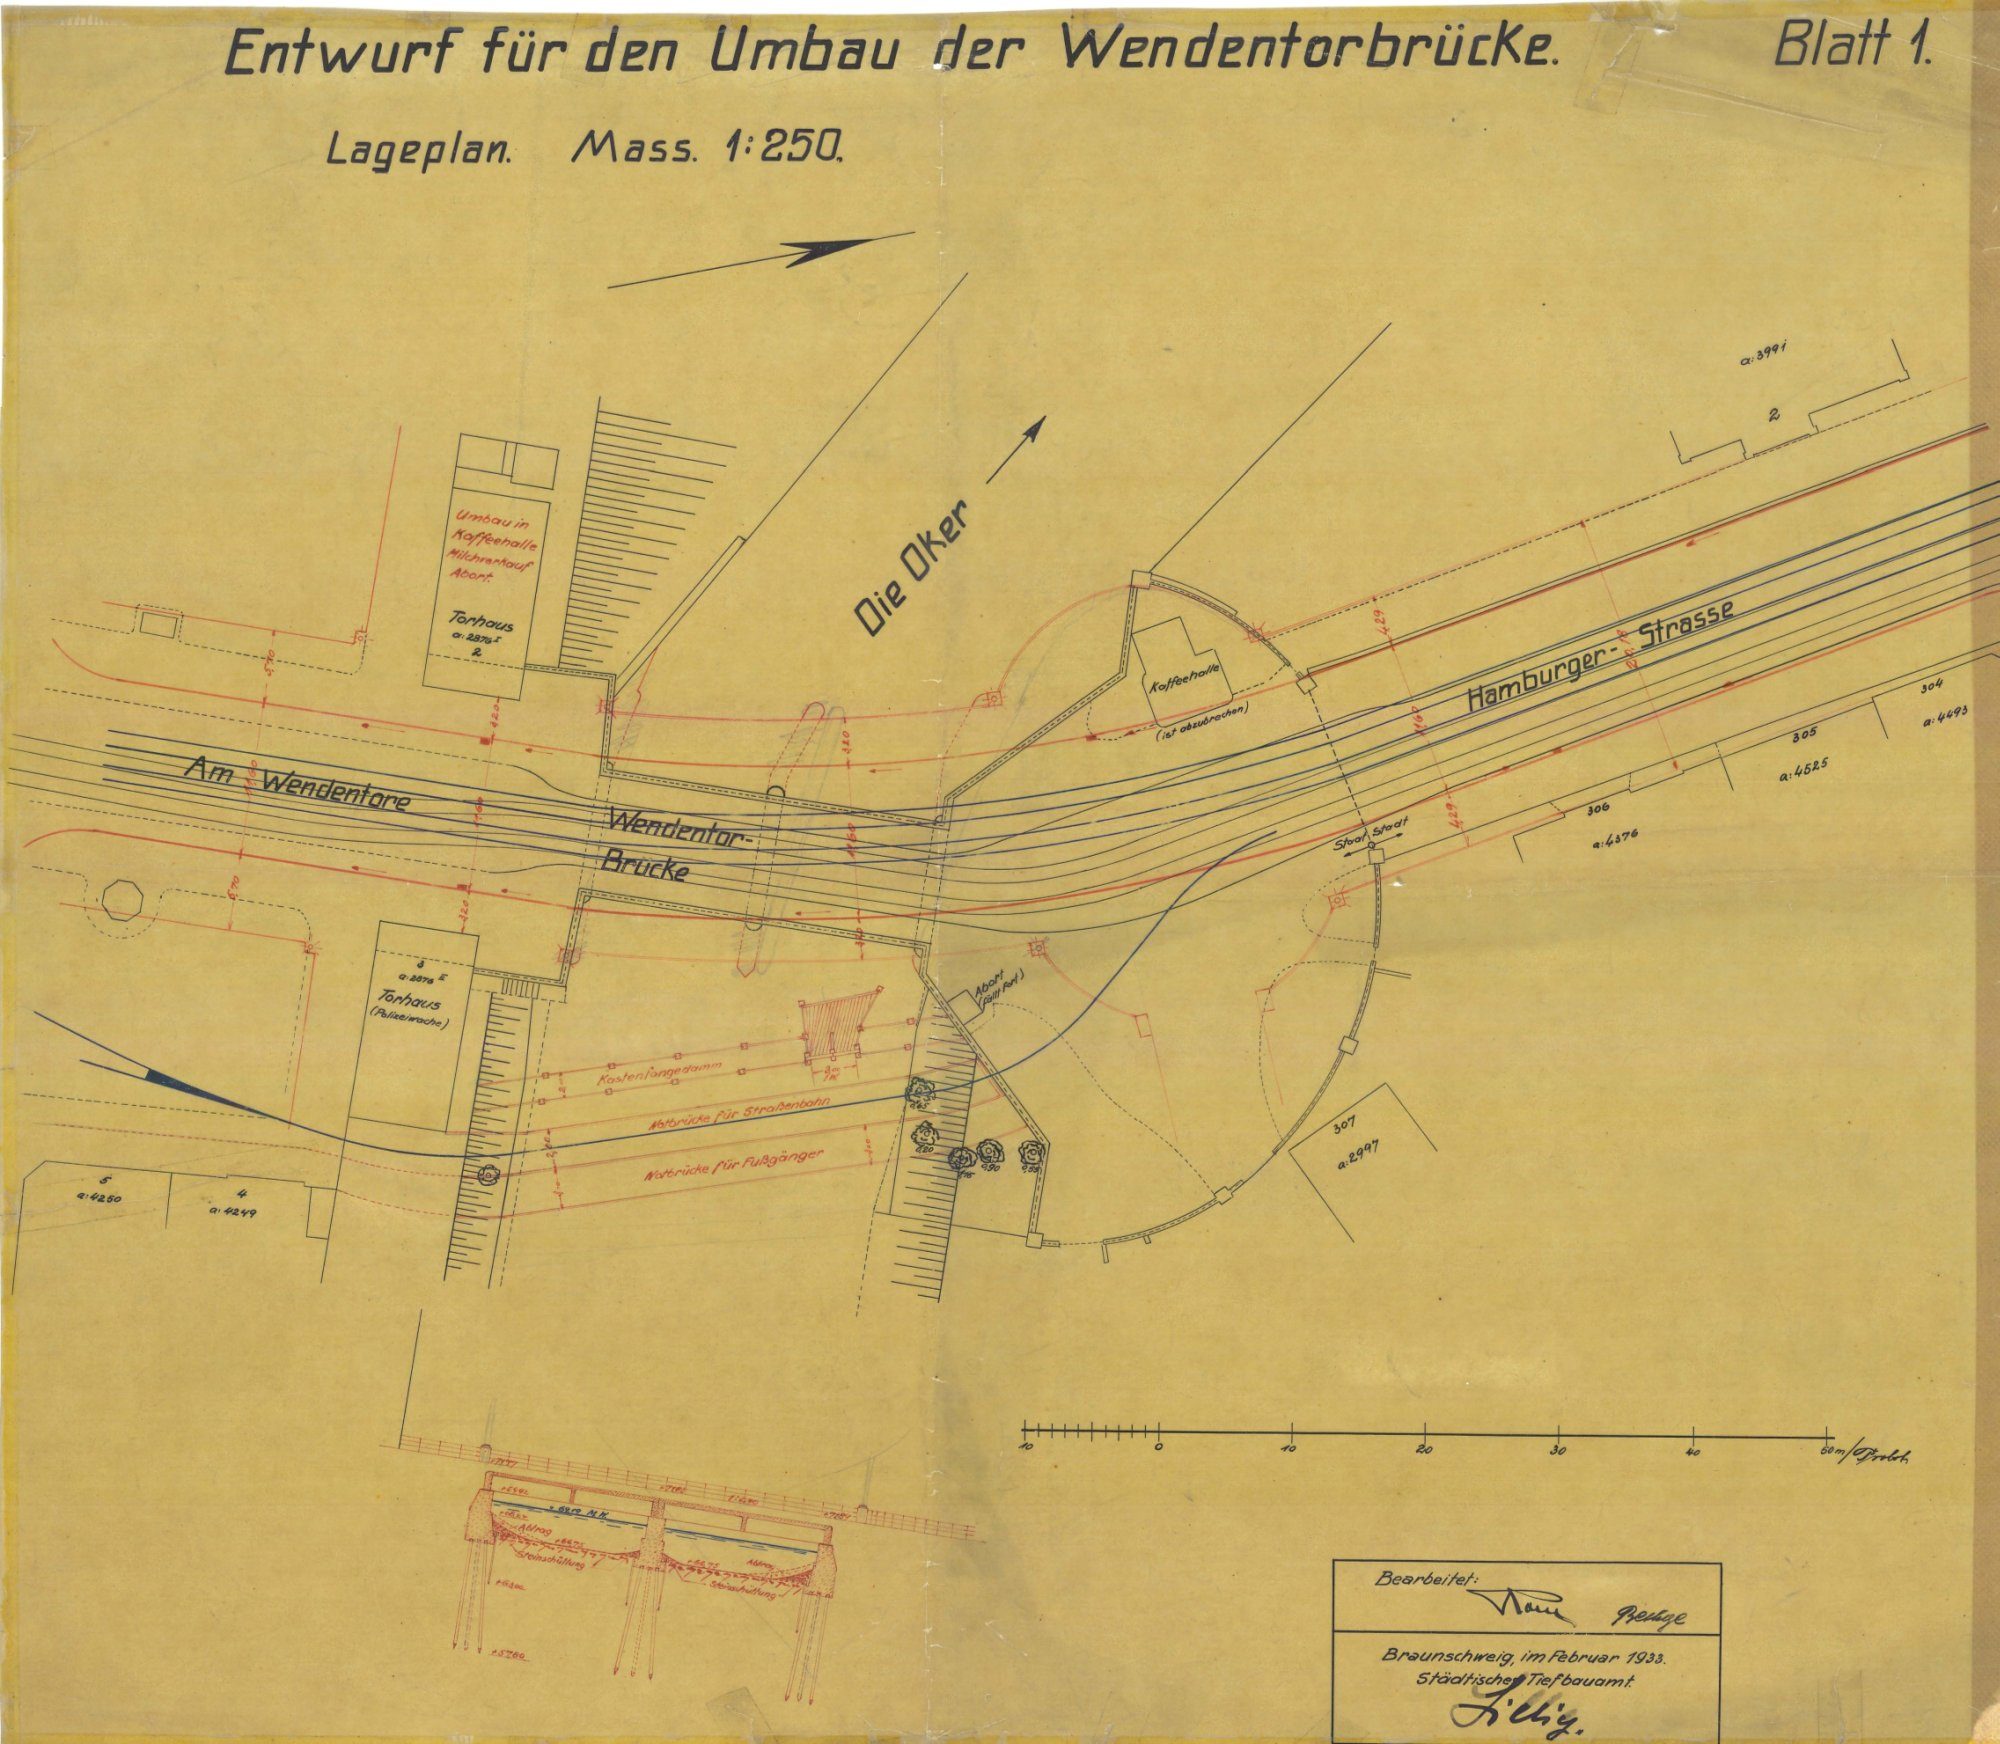 Wendentorbrücke, Lageplan, 1933 (Wird bei Klick vergrößert)